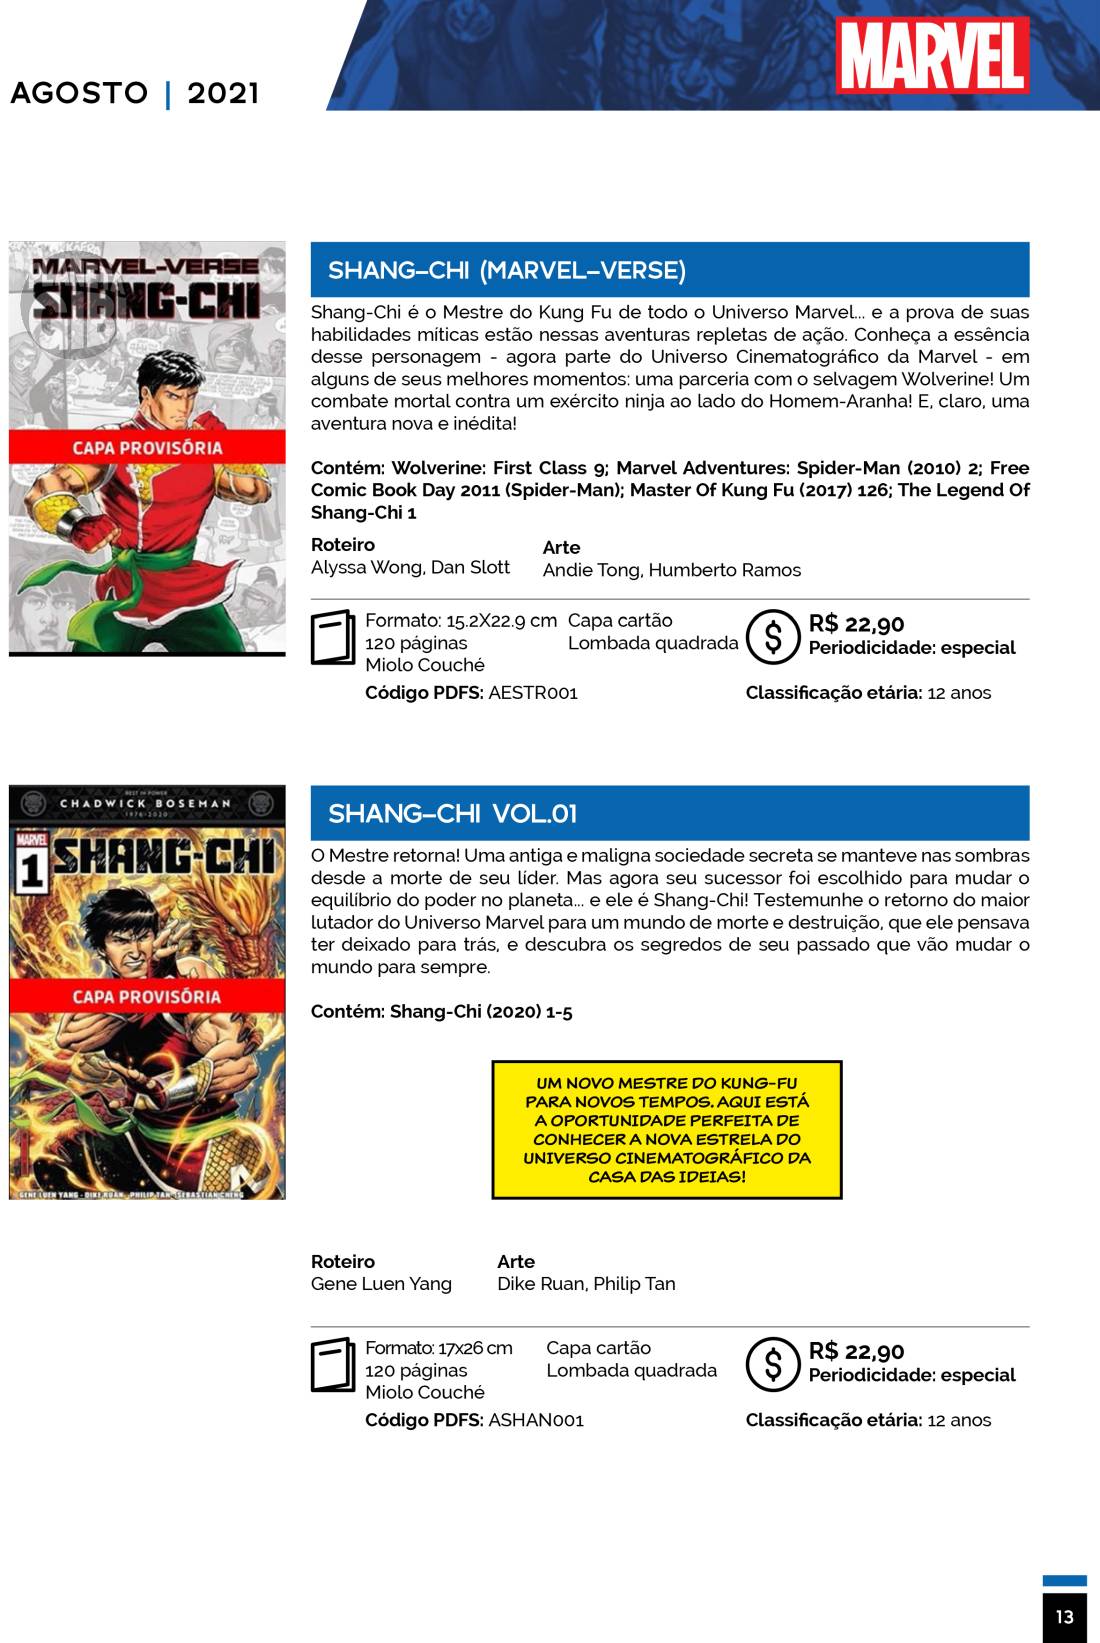 5 - Checklist Marvel/Panini (Julho/2020 - pág.09) - Página 9 Catalogo-Julho-Agosto-13